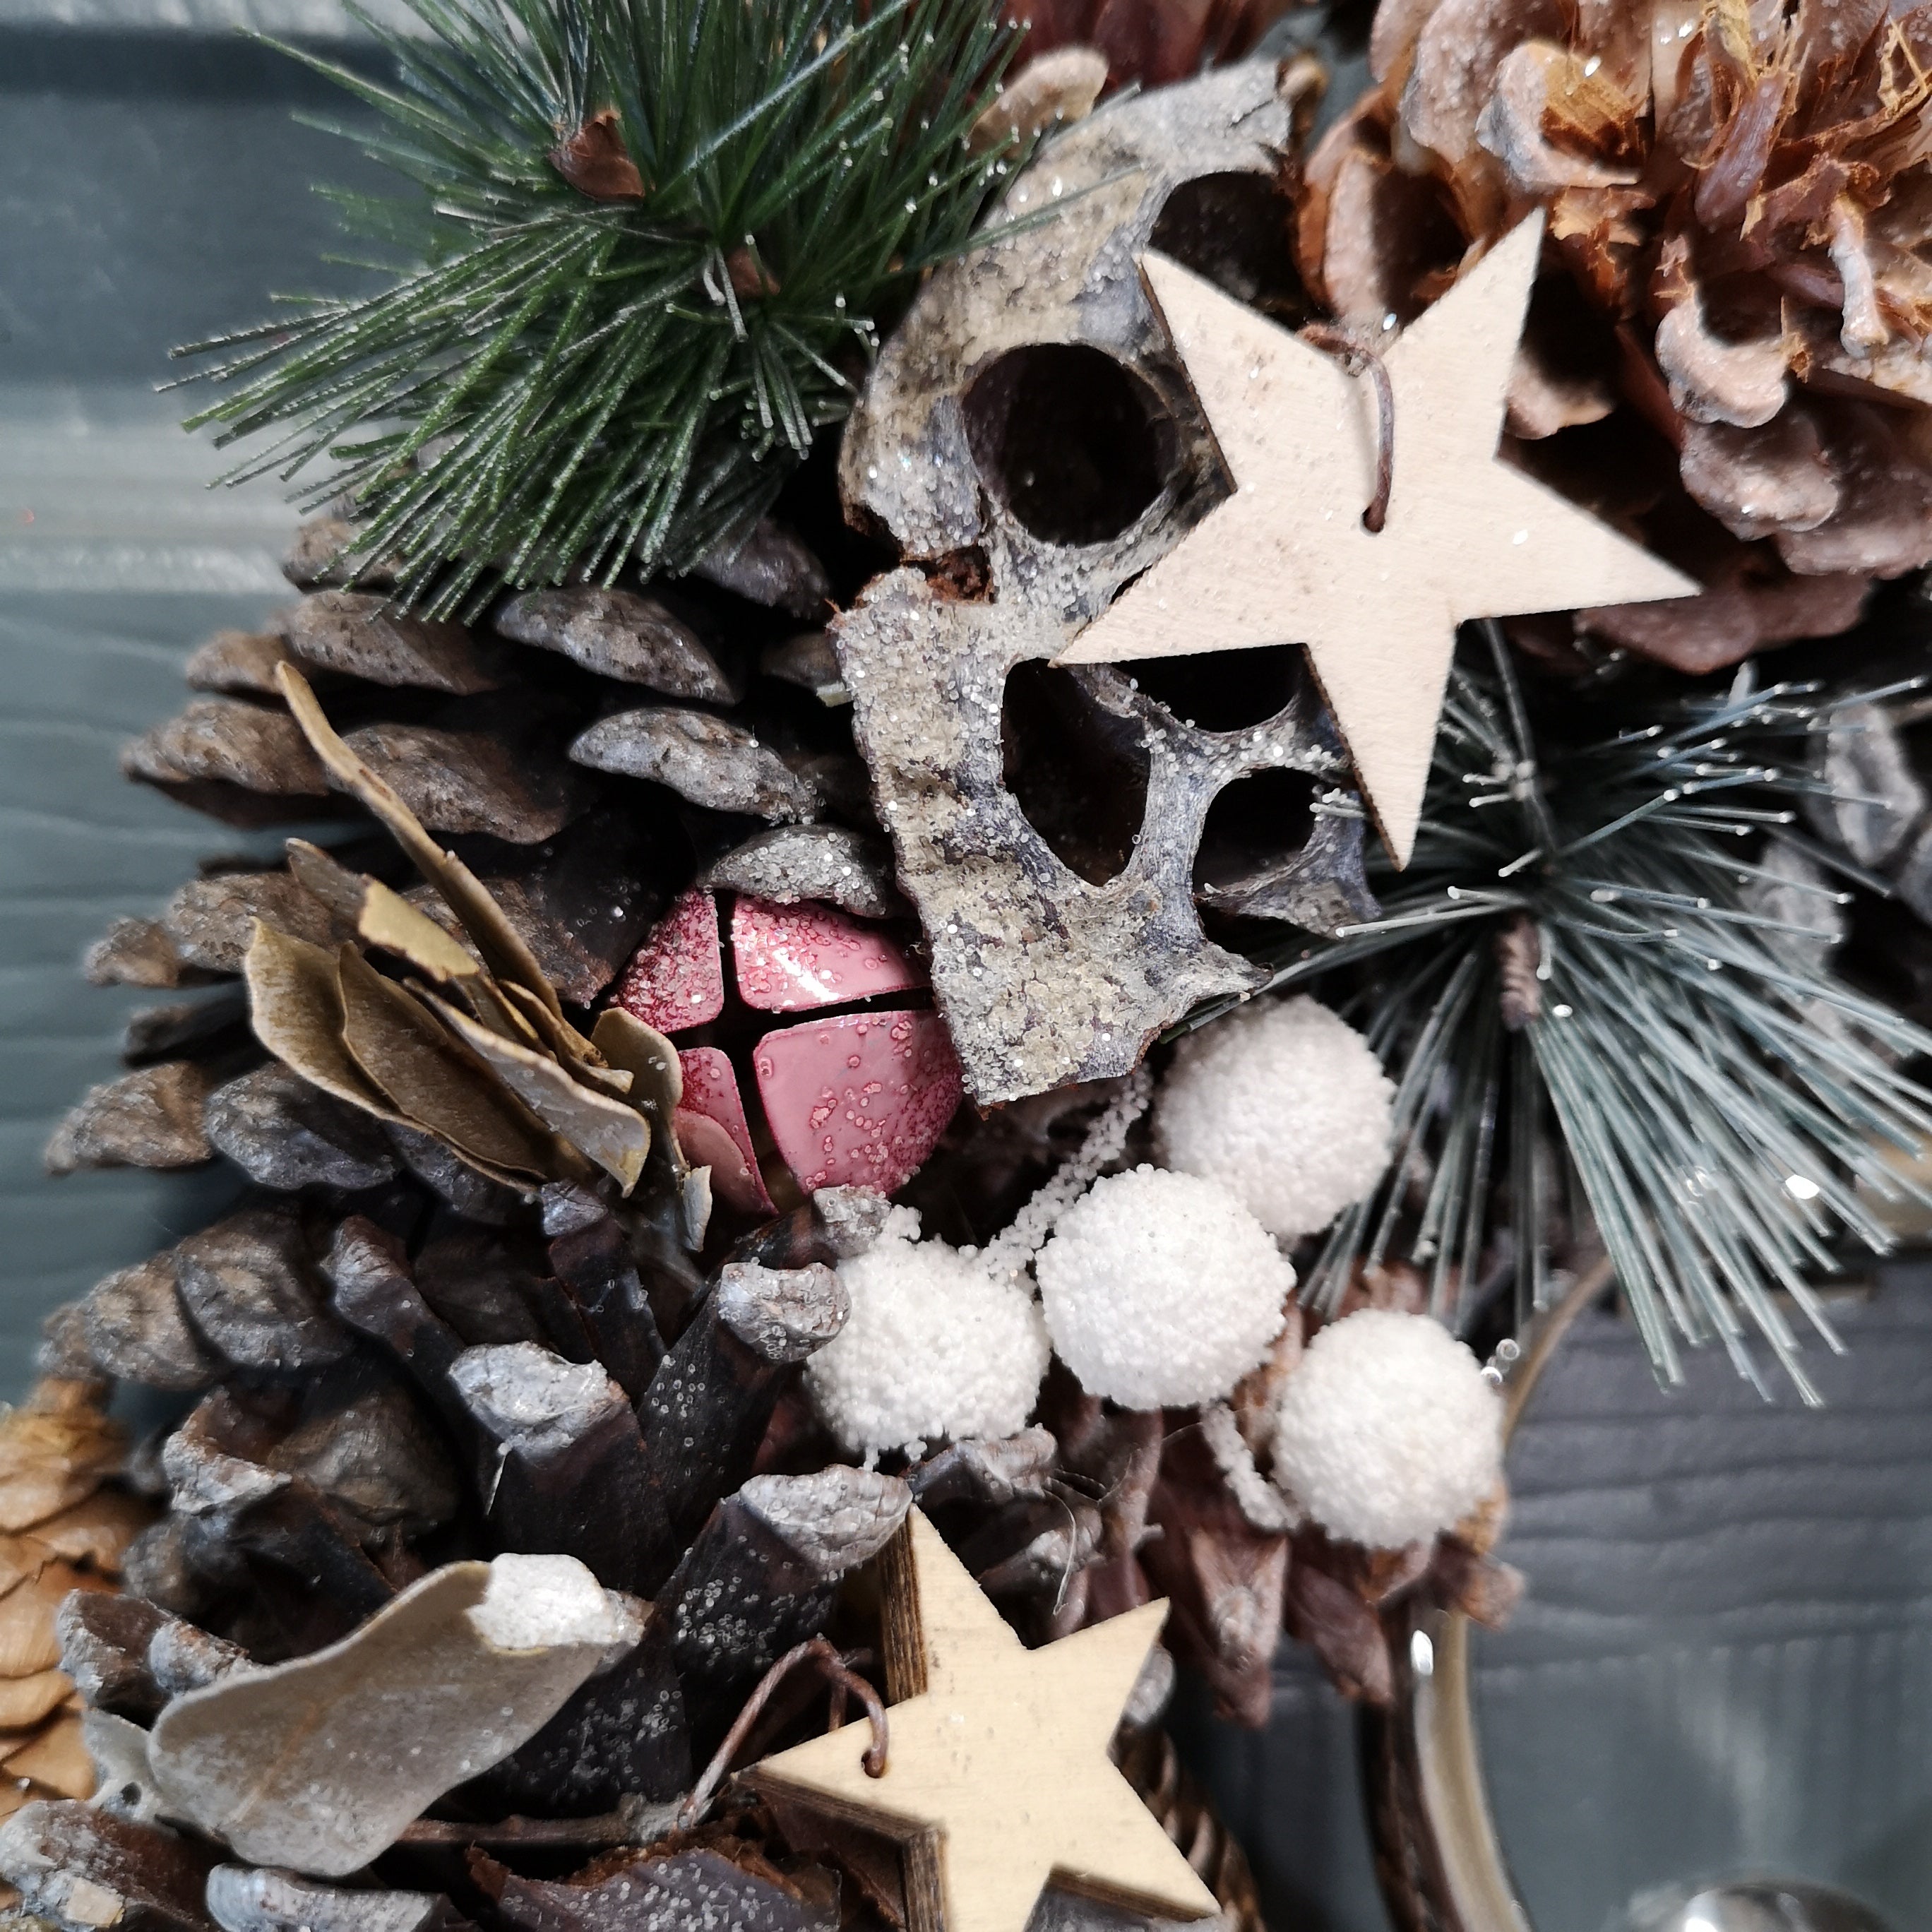 36cm Wooden Christmas White Berries Stars Bells and Grey Pine Cone Door Wreath